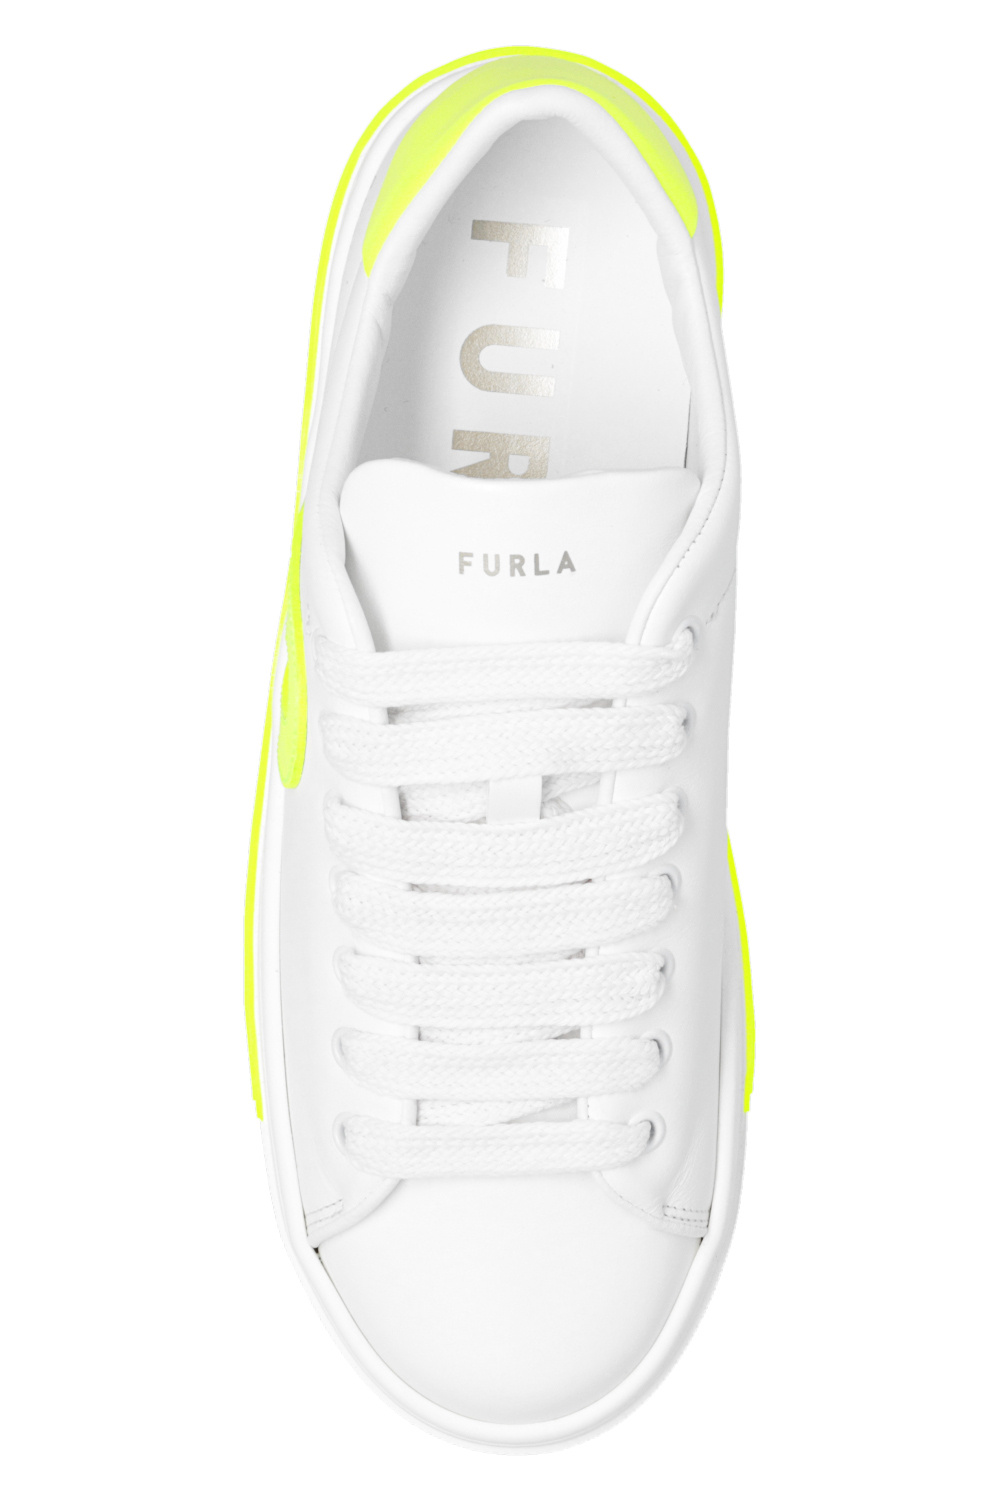 Furla ‘Binding’ sneakers